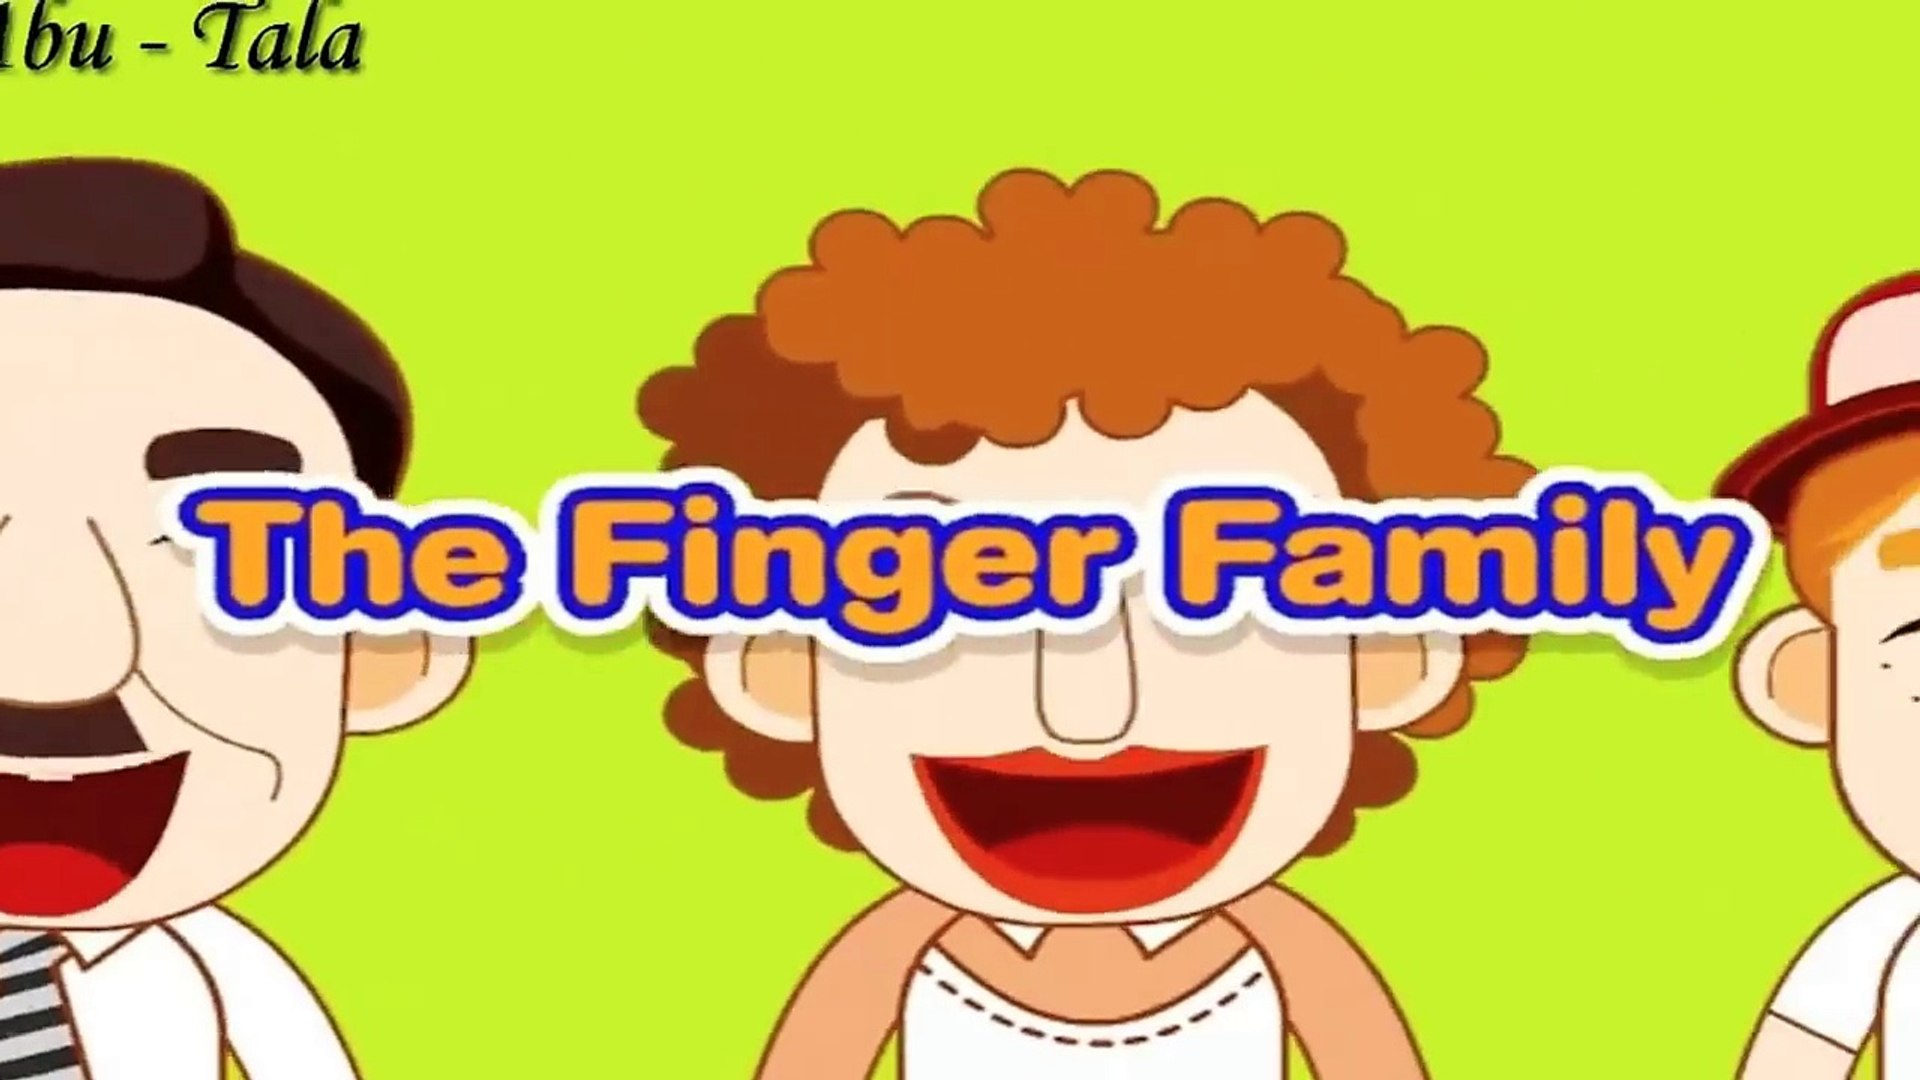 انشودة اسماء العائلة باللغة الانجليزية The Finger Family Song